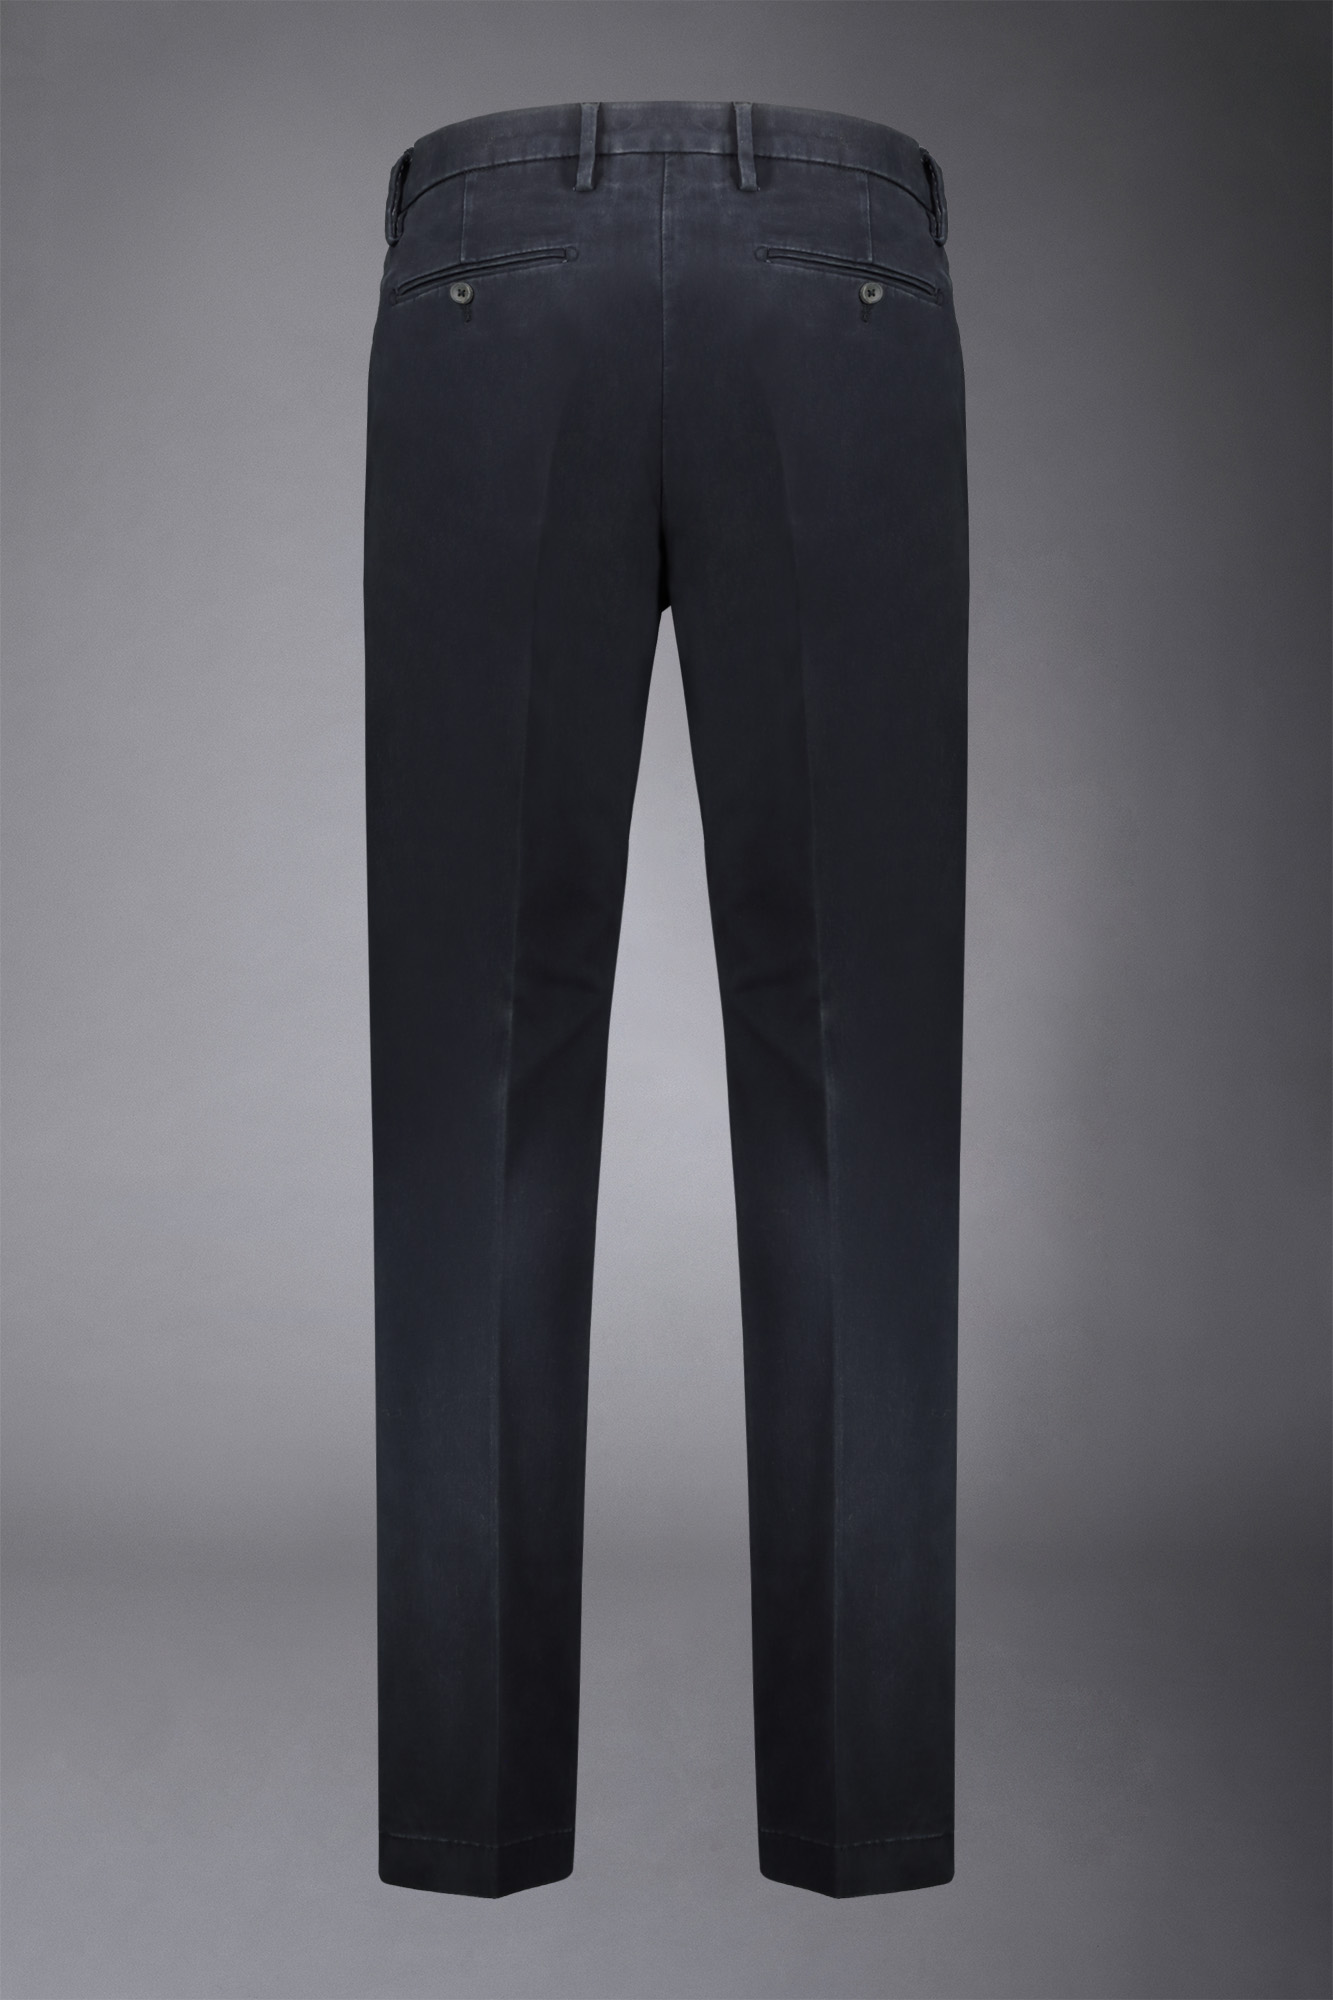 Pantalone chino uomo classico regular fit tessuto twill elasticizzato image number null